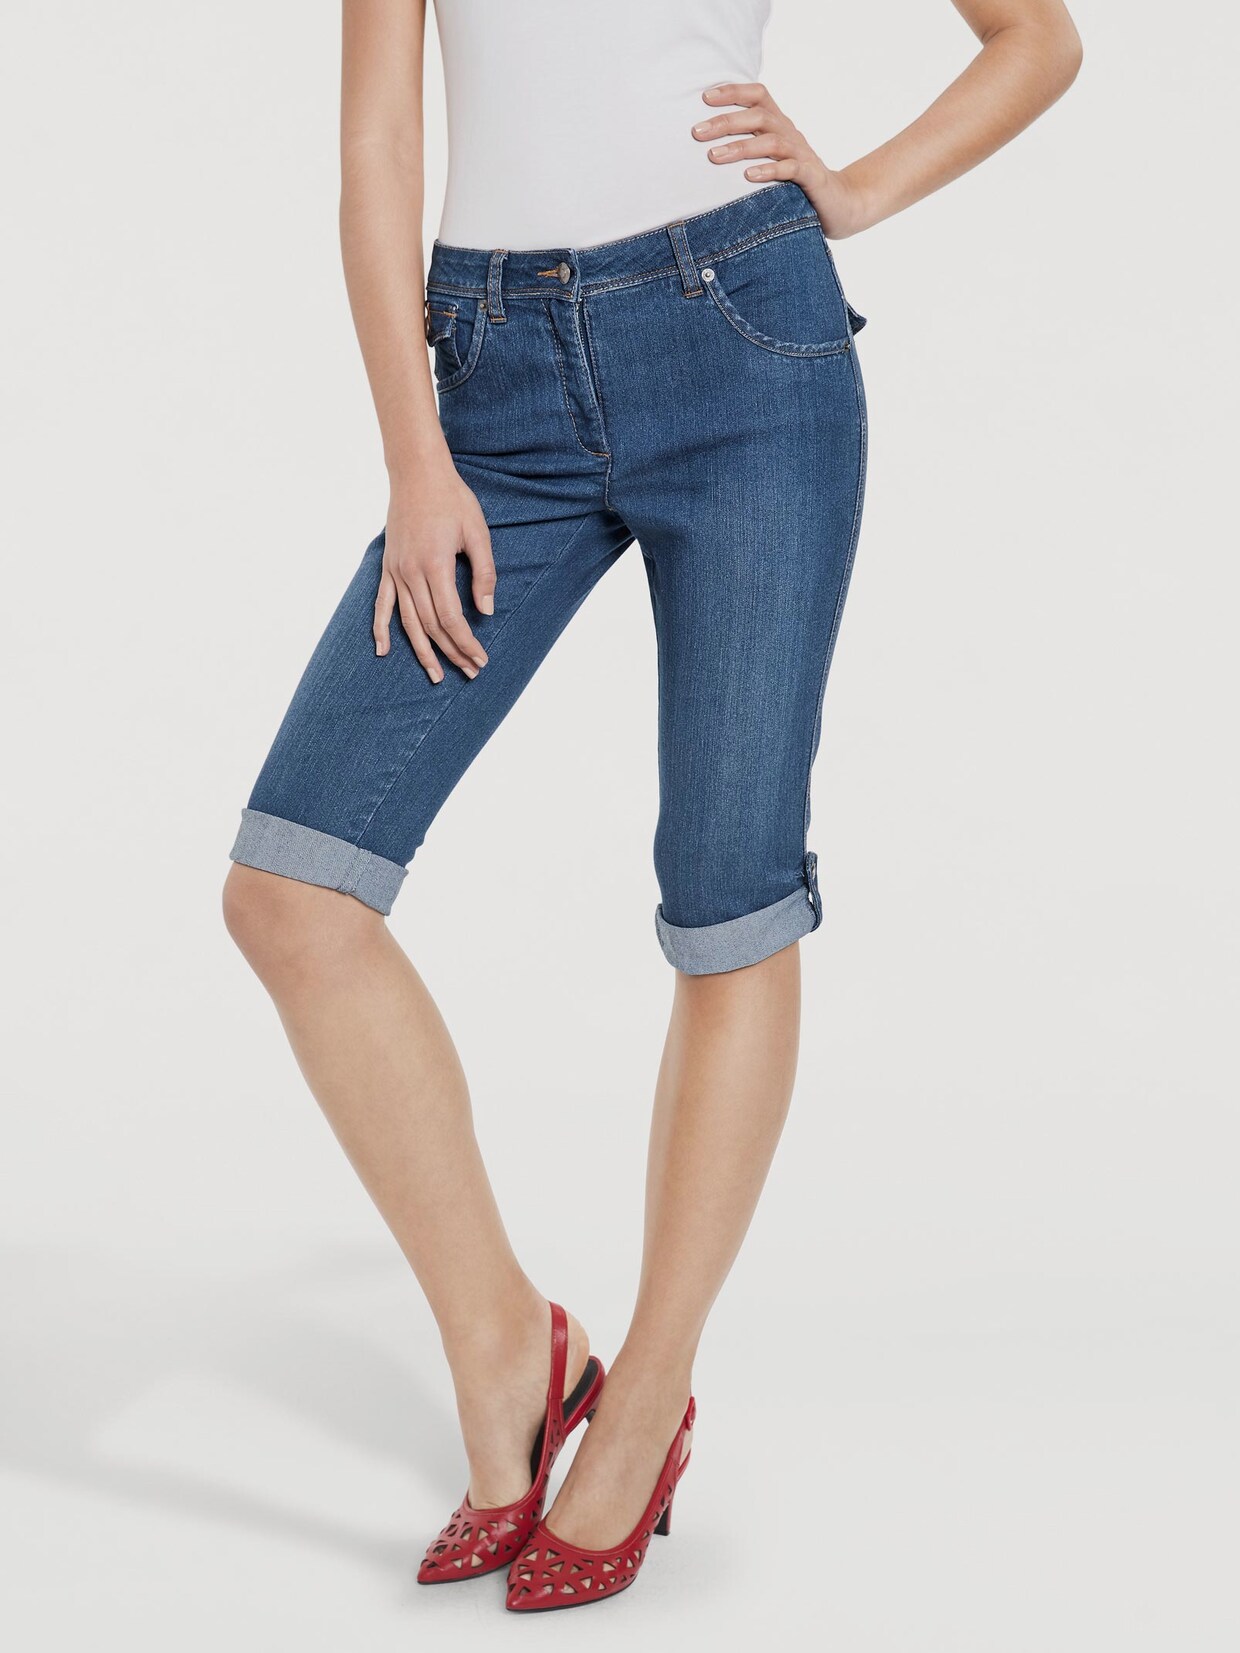 Ashley Brooke Corsaire en jean - bleu délavé